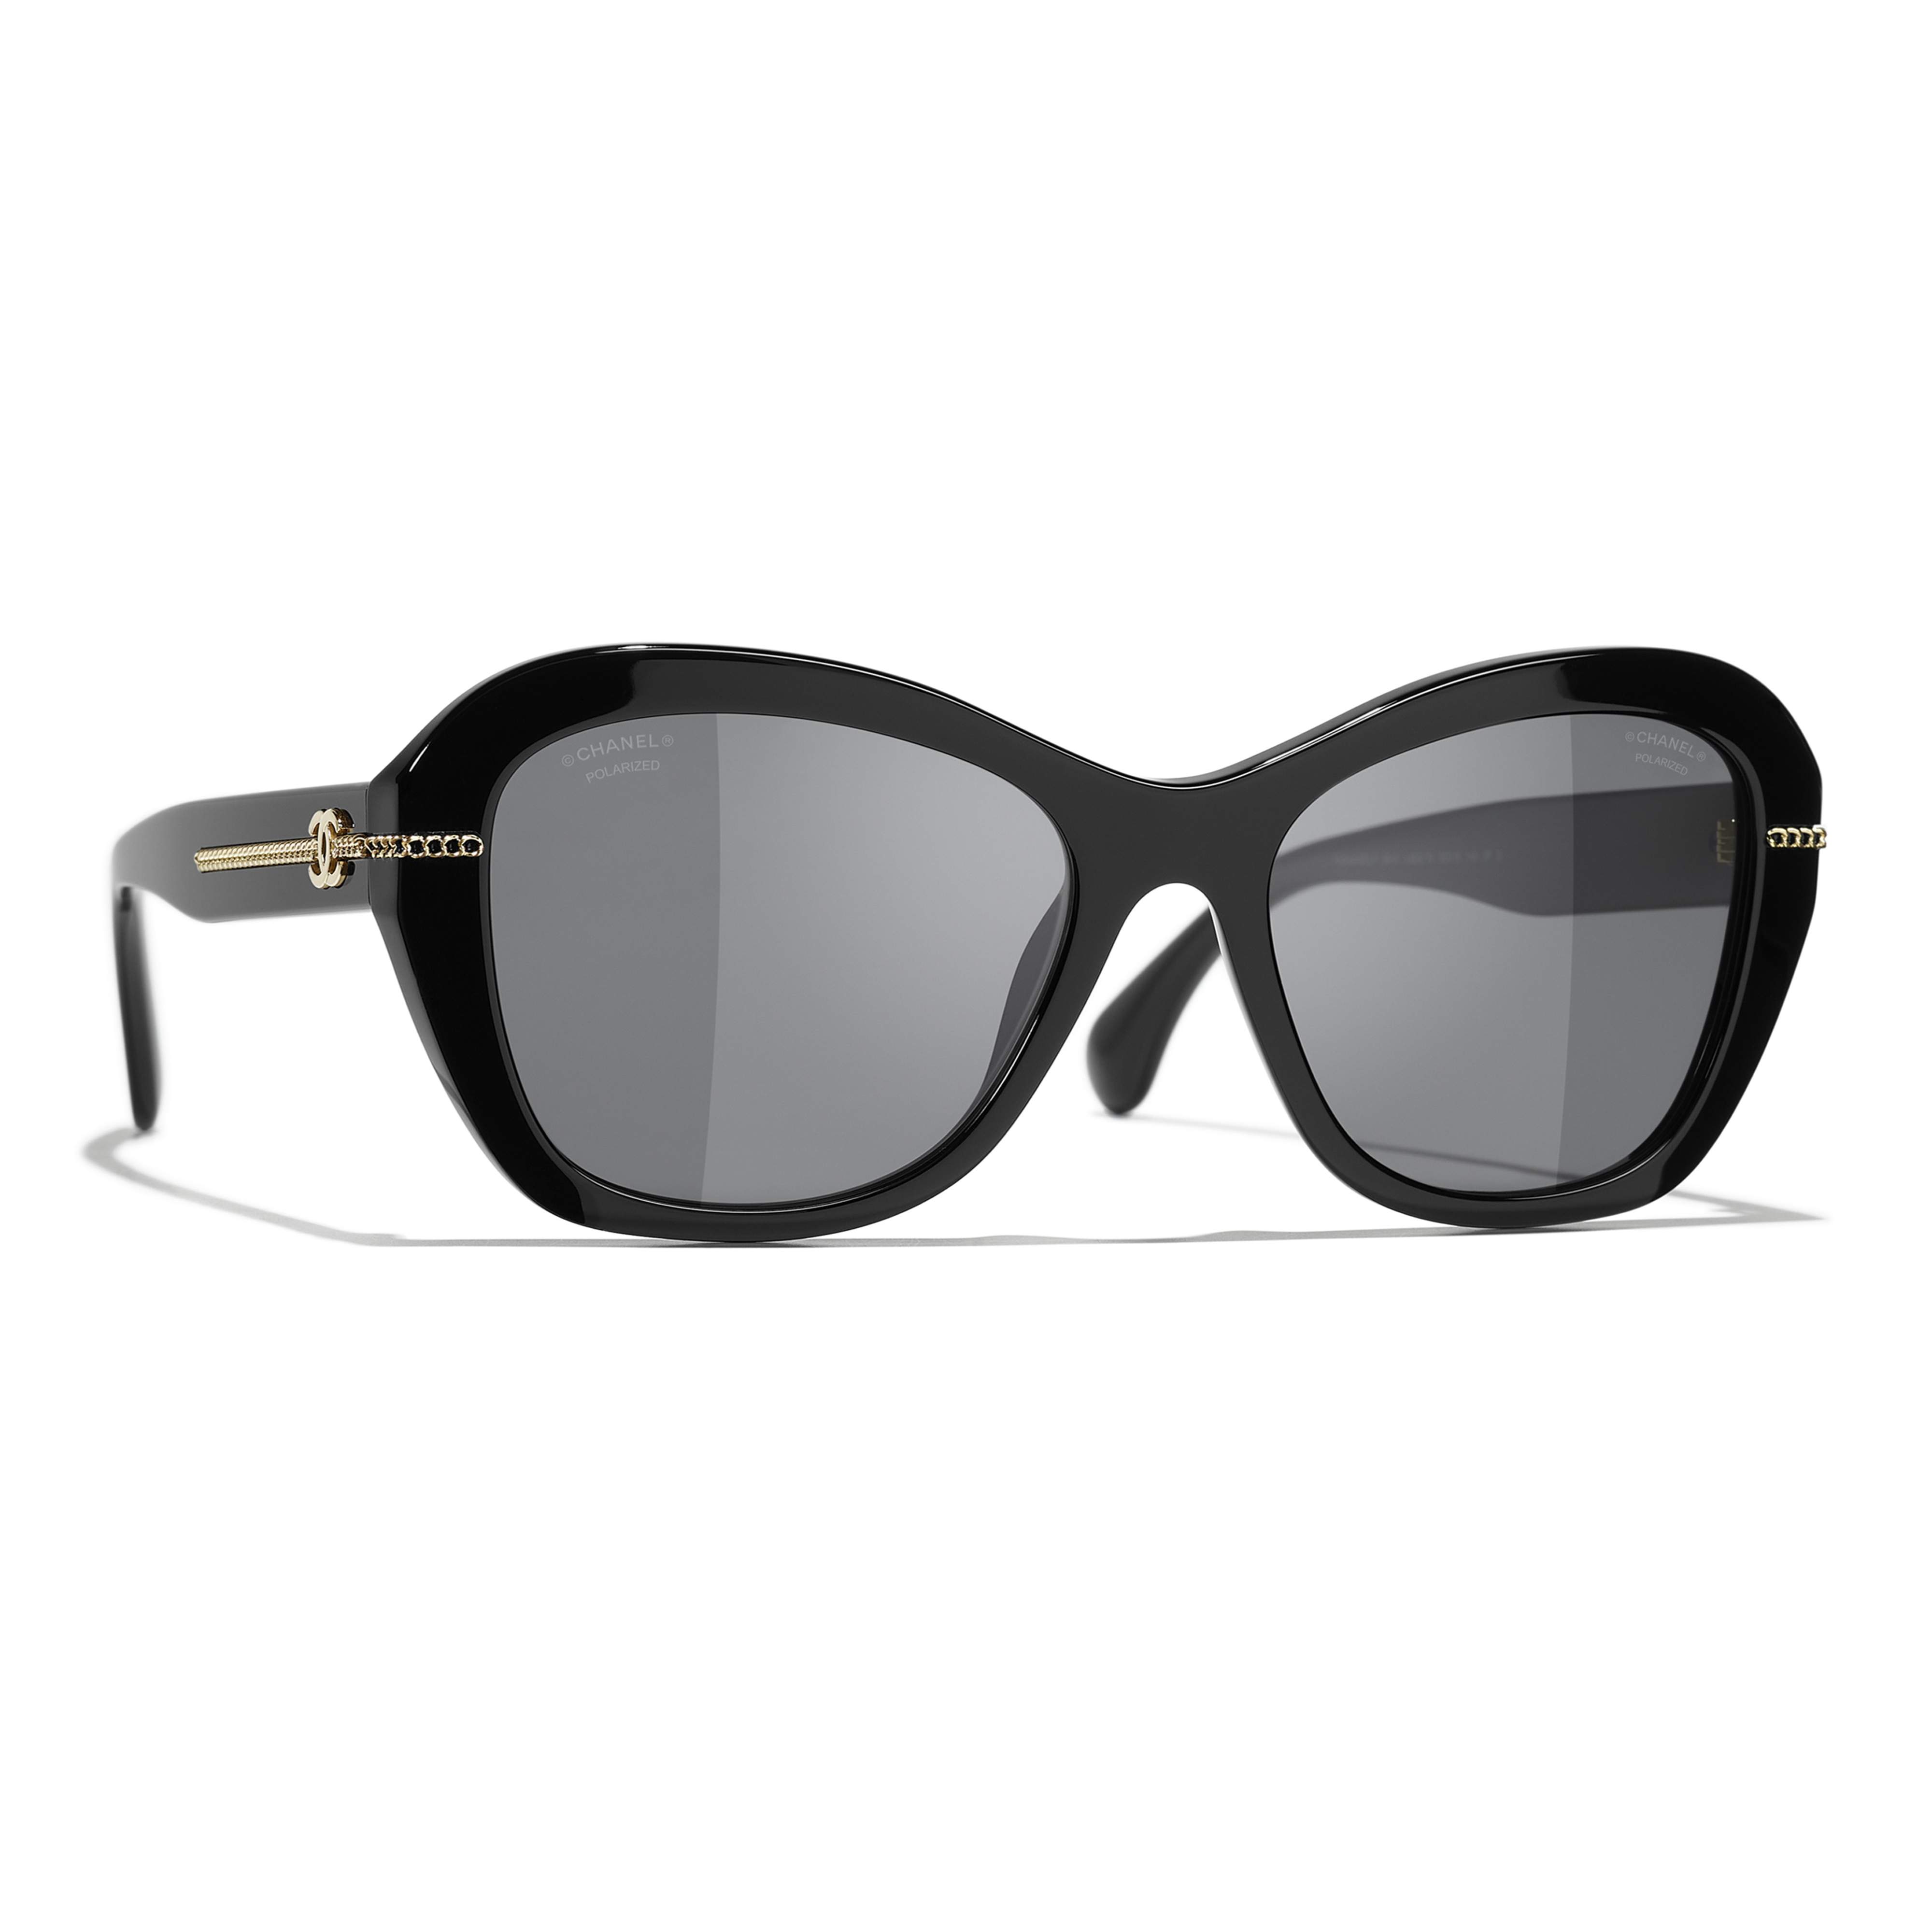 Sunglasses CHANEL CH5510 C622/T8 55-18 Black in stock | Price 275,00 ...